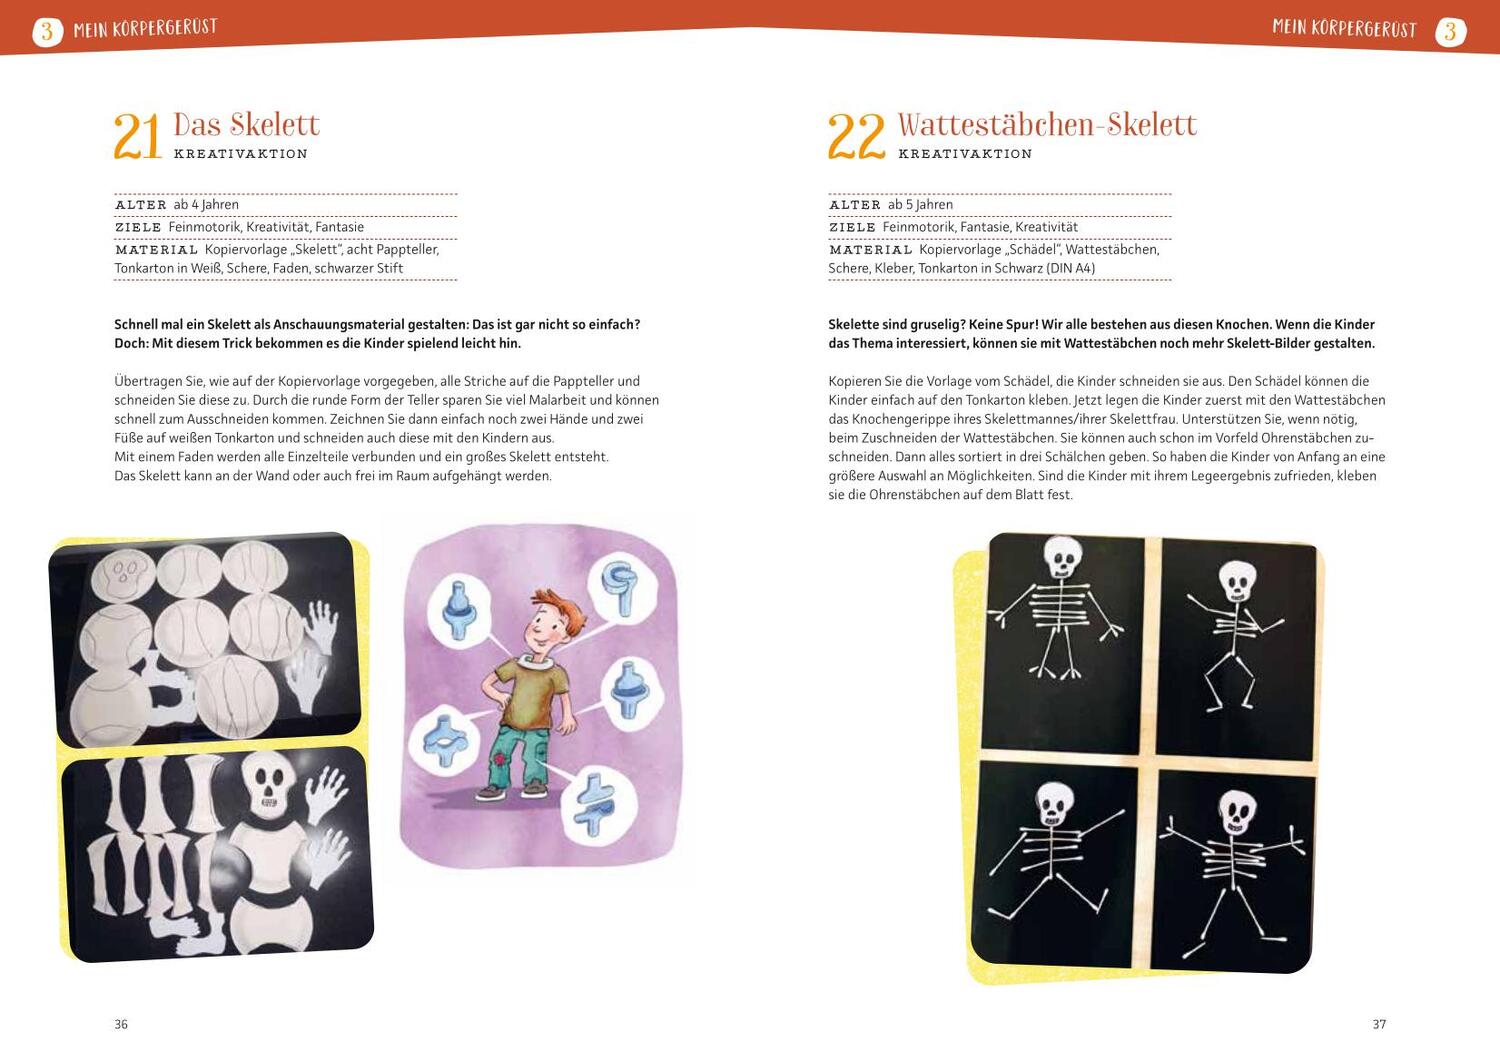 Bild: 9783780652058 | Projektreihe Kindergarten - Mein Körper | Anja Mohr | Taschenbuch